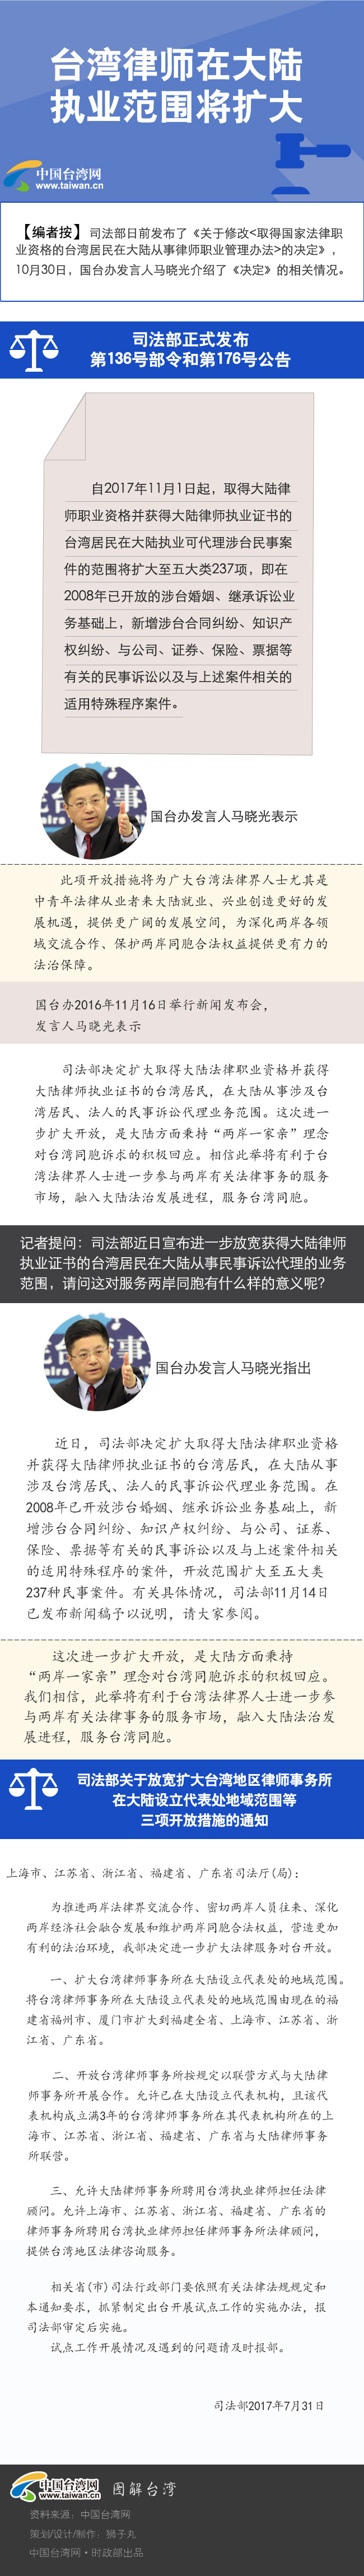 【圖解新聞】台灣律師在大陸執業範圍將擴大